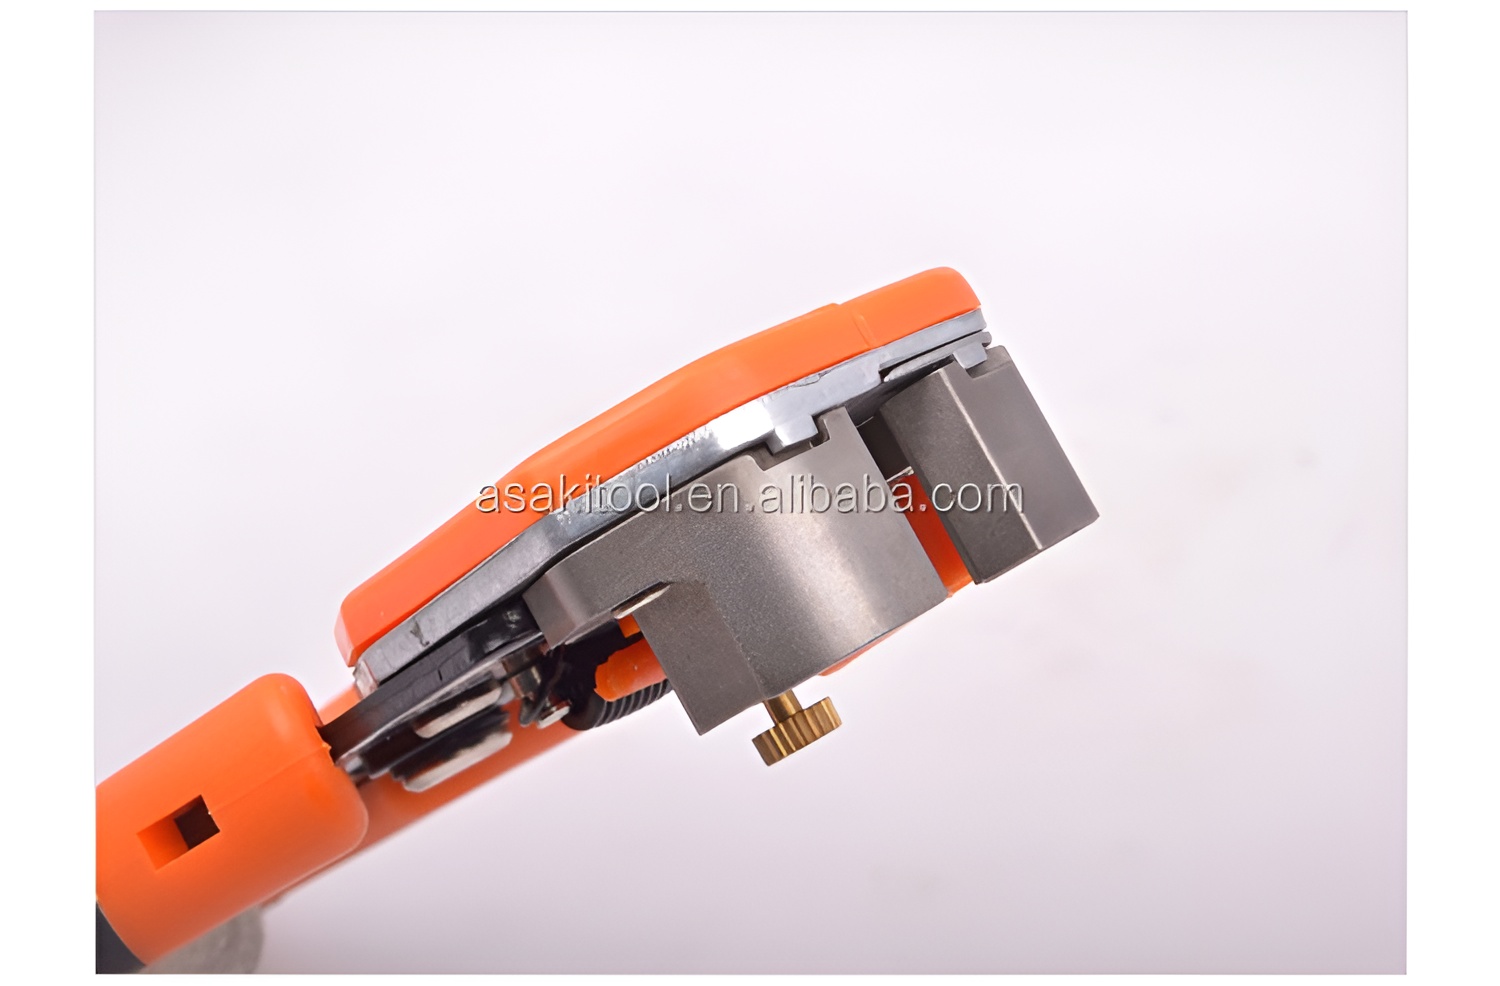 Hình ảnh 5 của mặt hàng Kềm tuốt dây điện tự động đa năng cao cấp 8″/200mm Asaki AK-0339